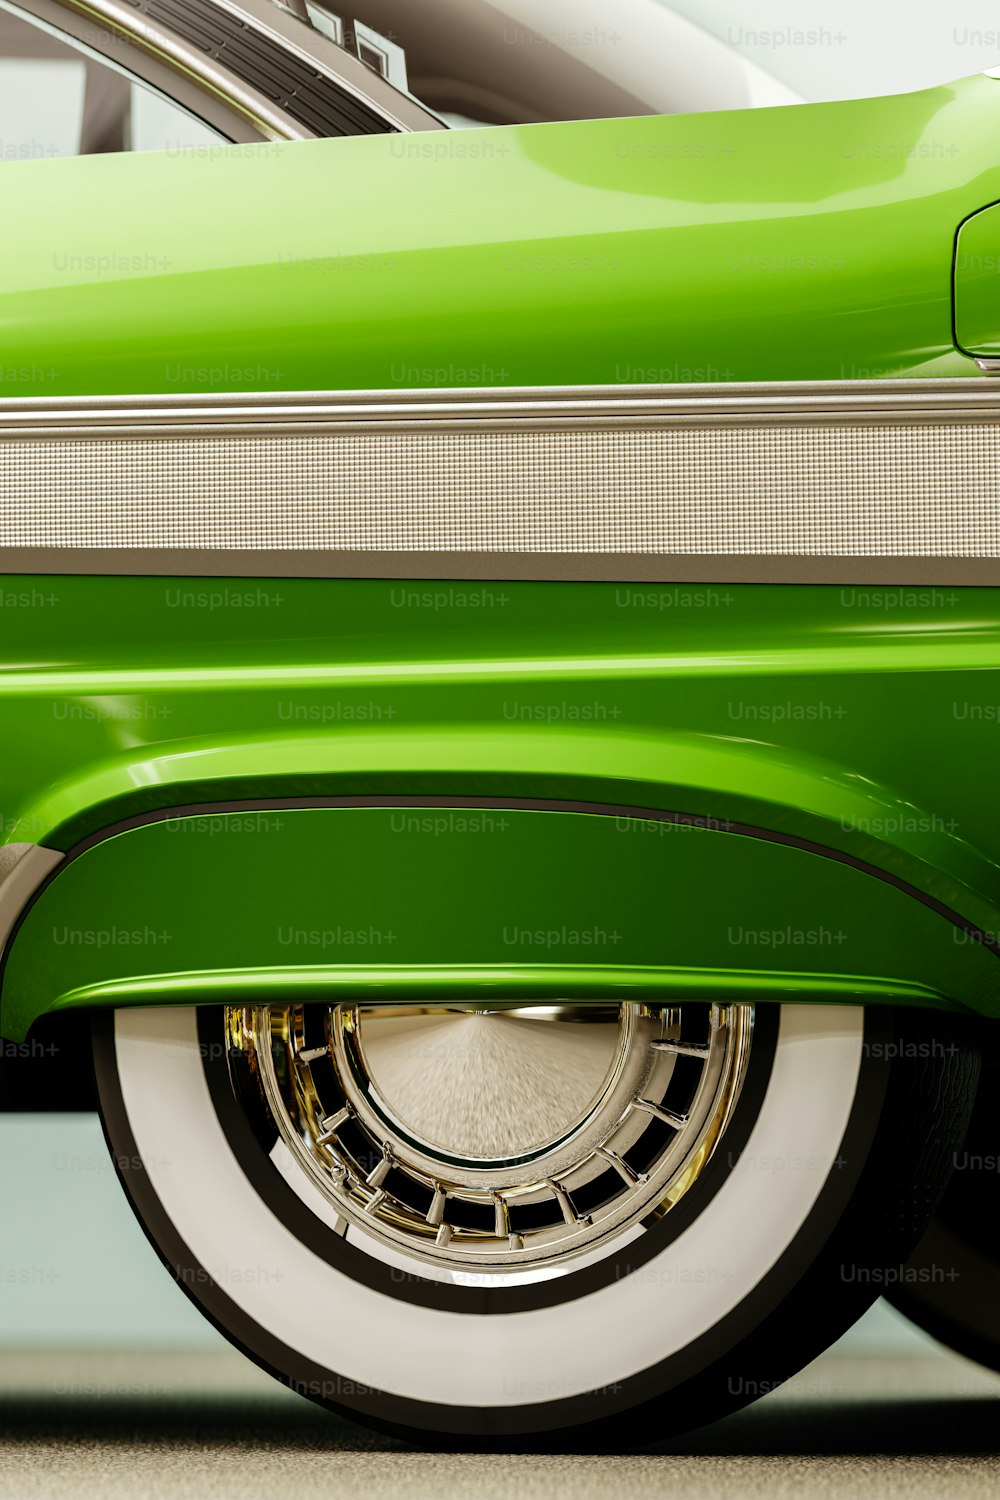 um close up de um carro verde com jantes brancas